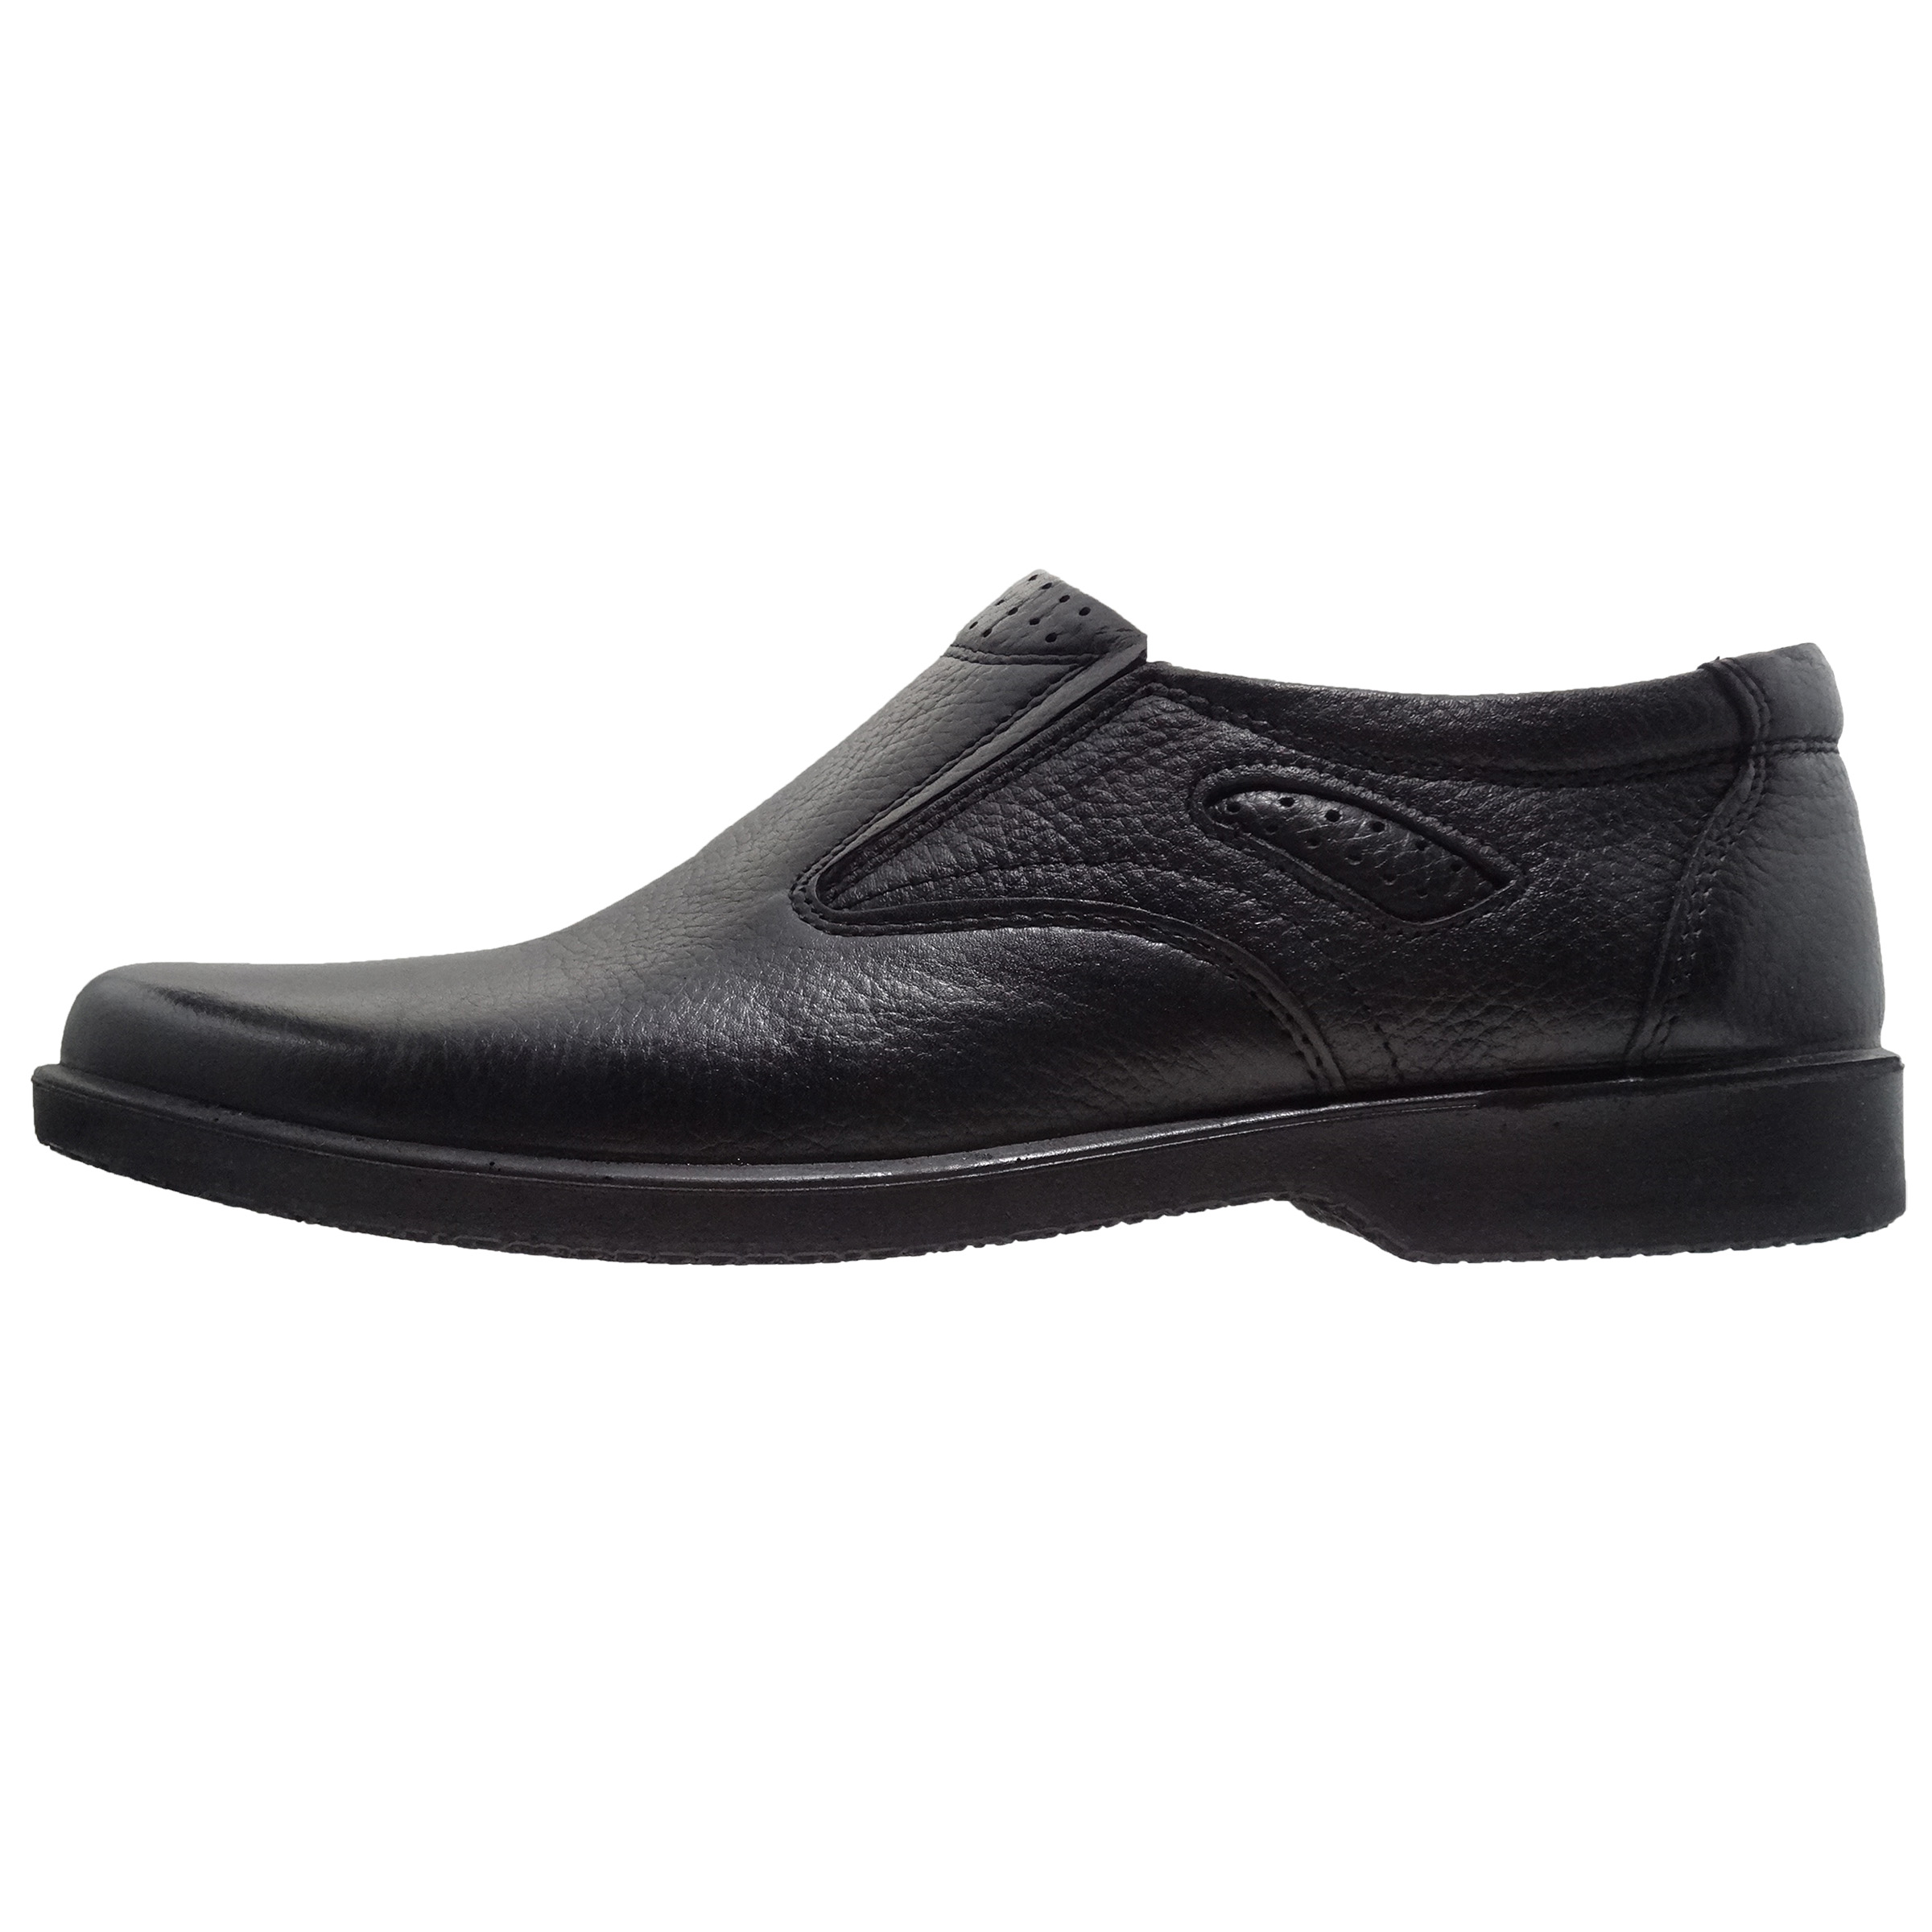 برچسب کفش مردانه مدل Galardo کد 432 - کفش راحتی مردانه